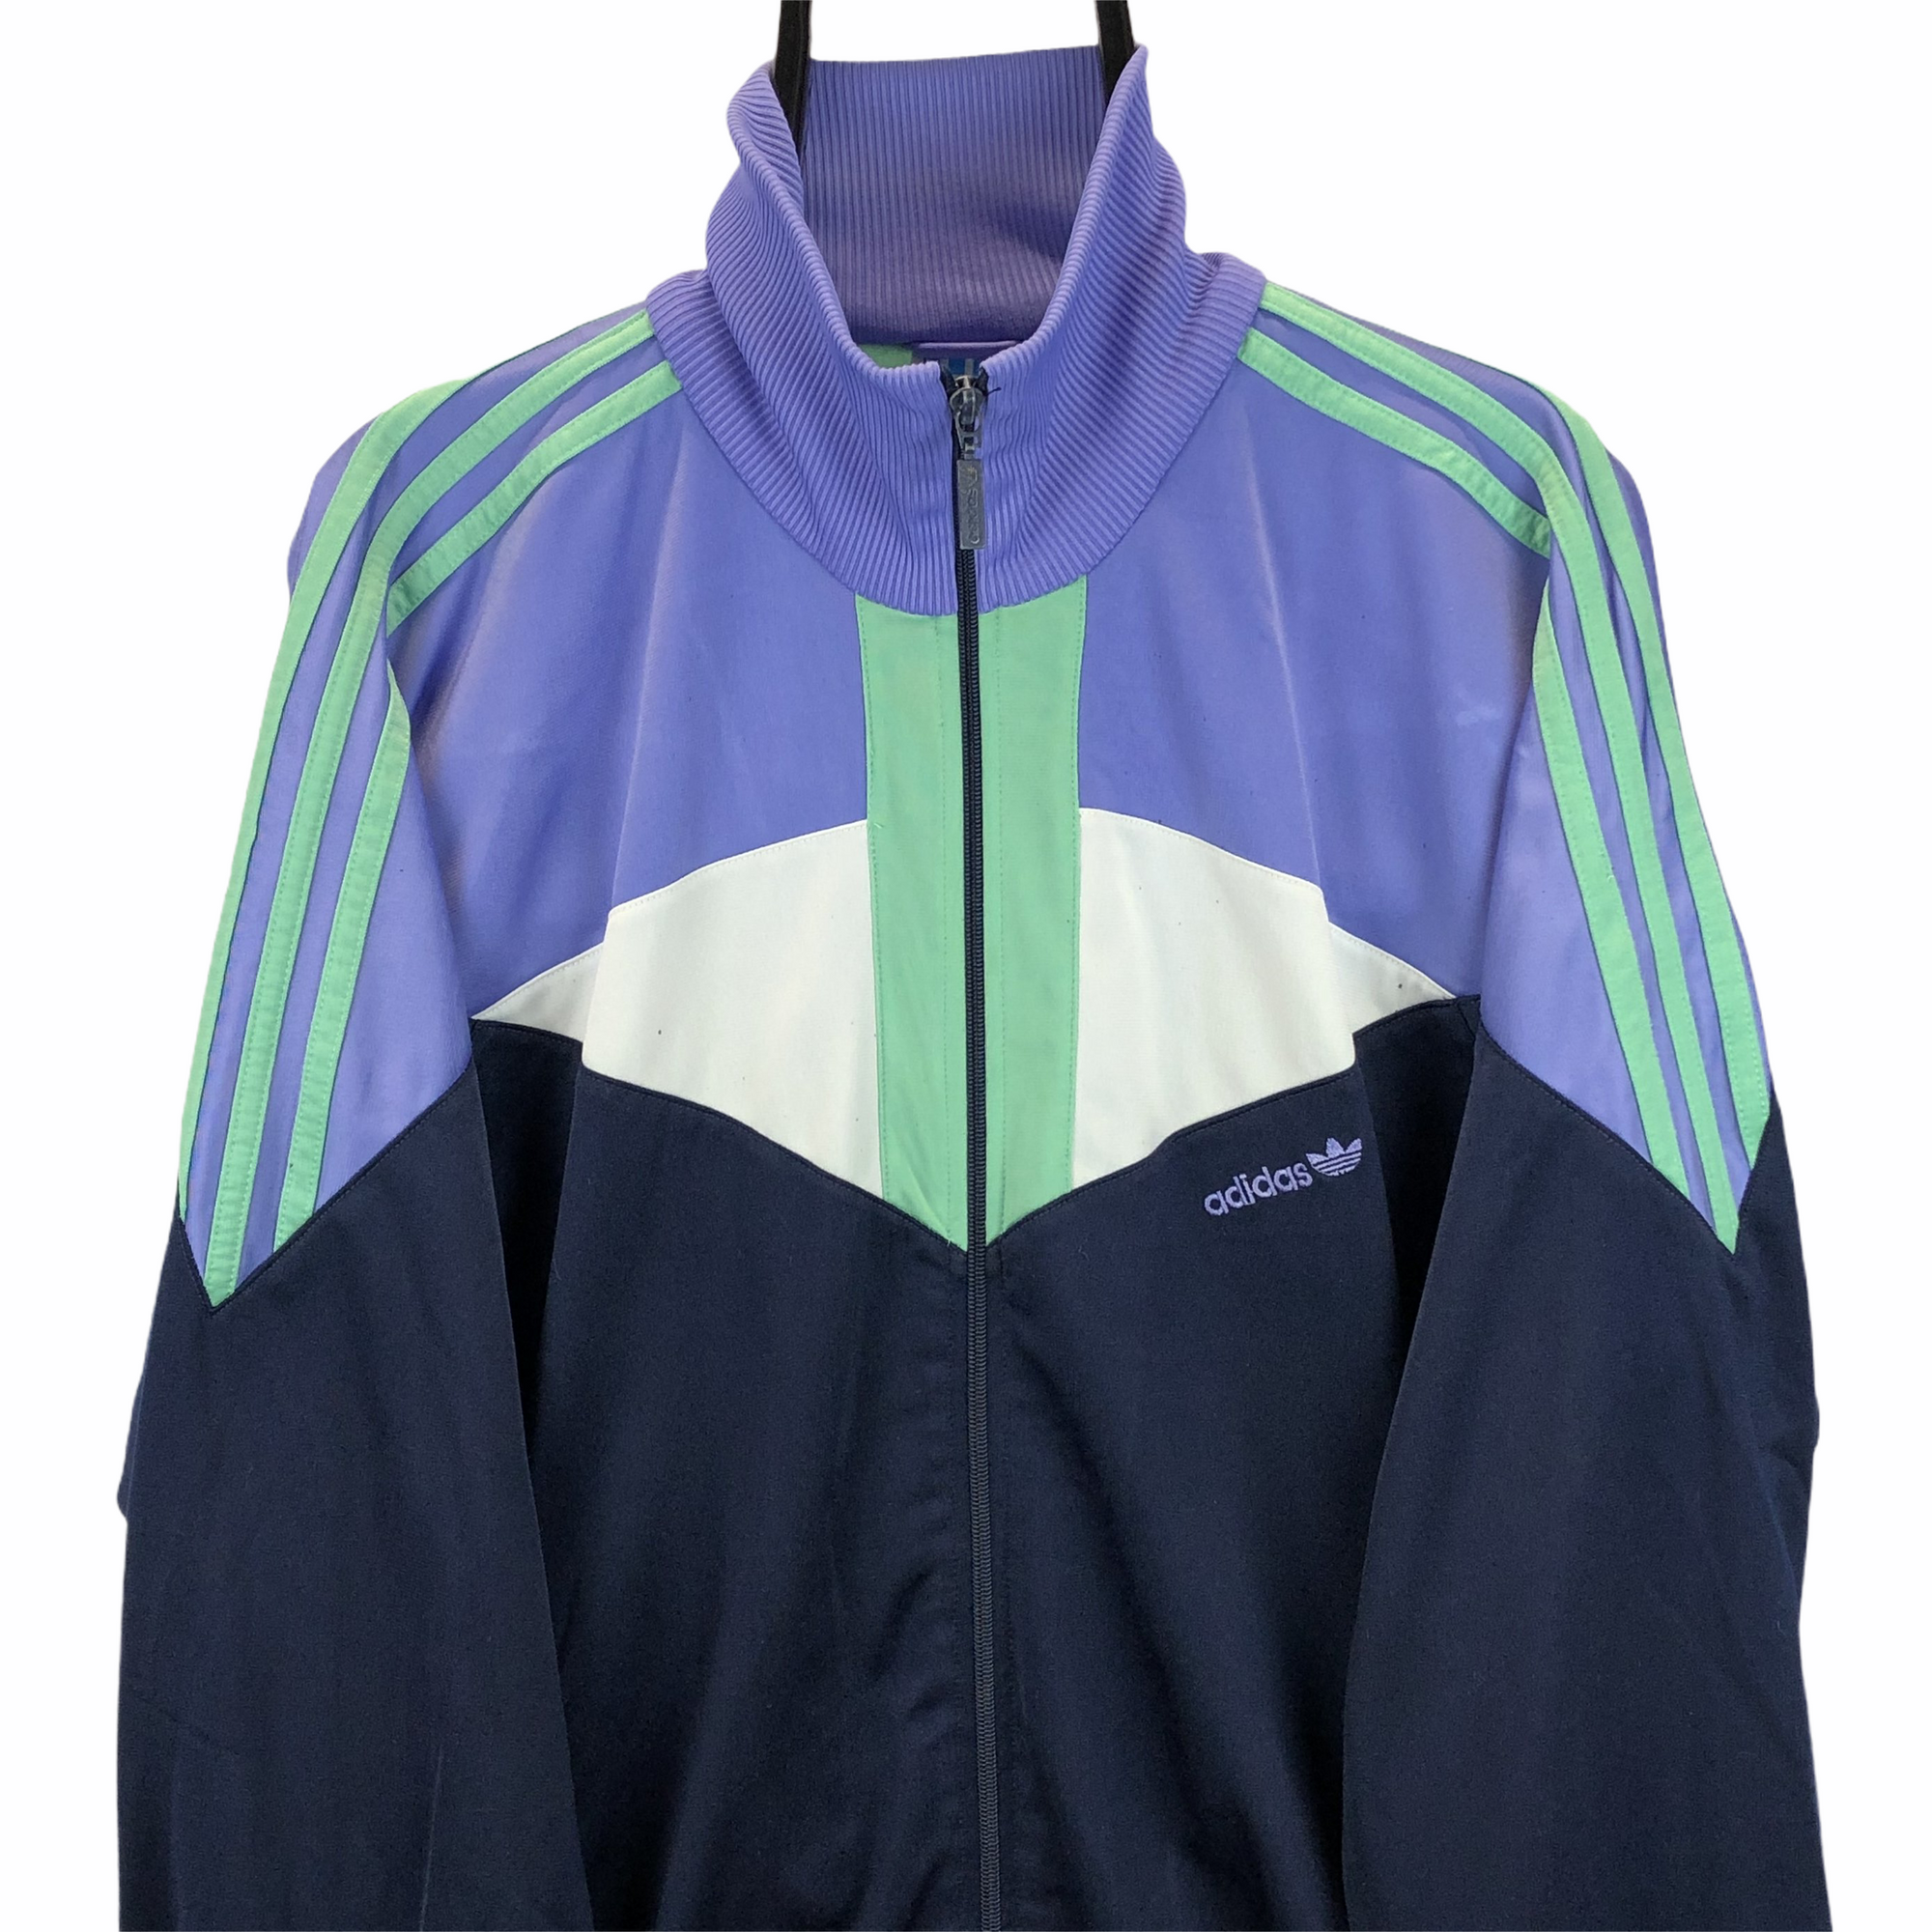 Vintage 80s Adidas Quad-Colour Track Jacket - Men's Large/Women's XL